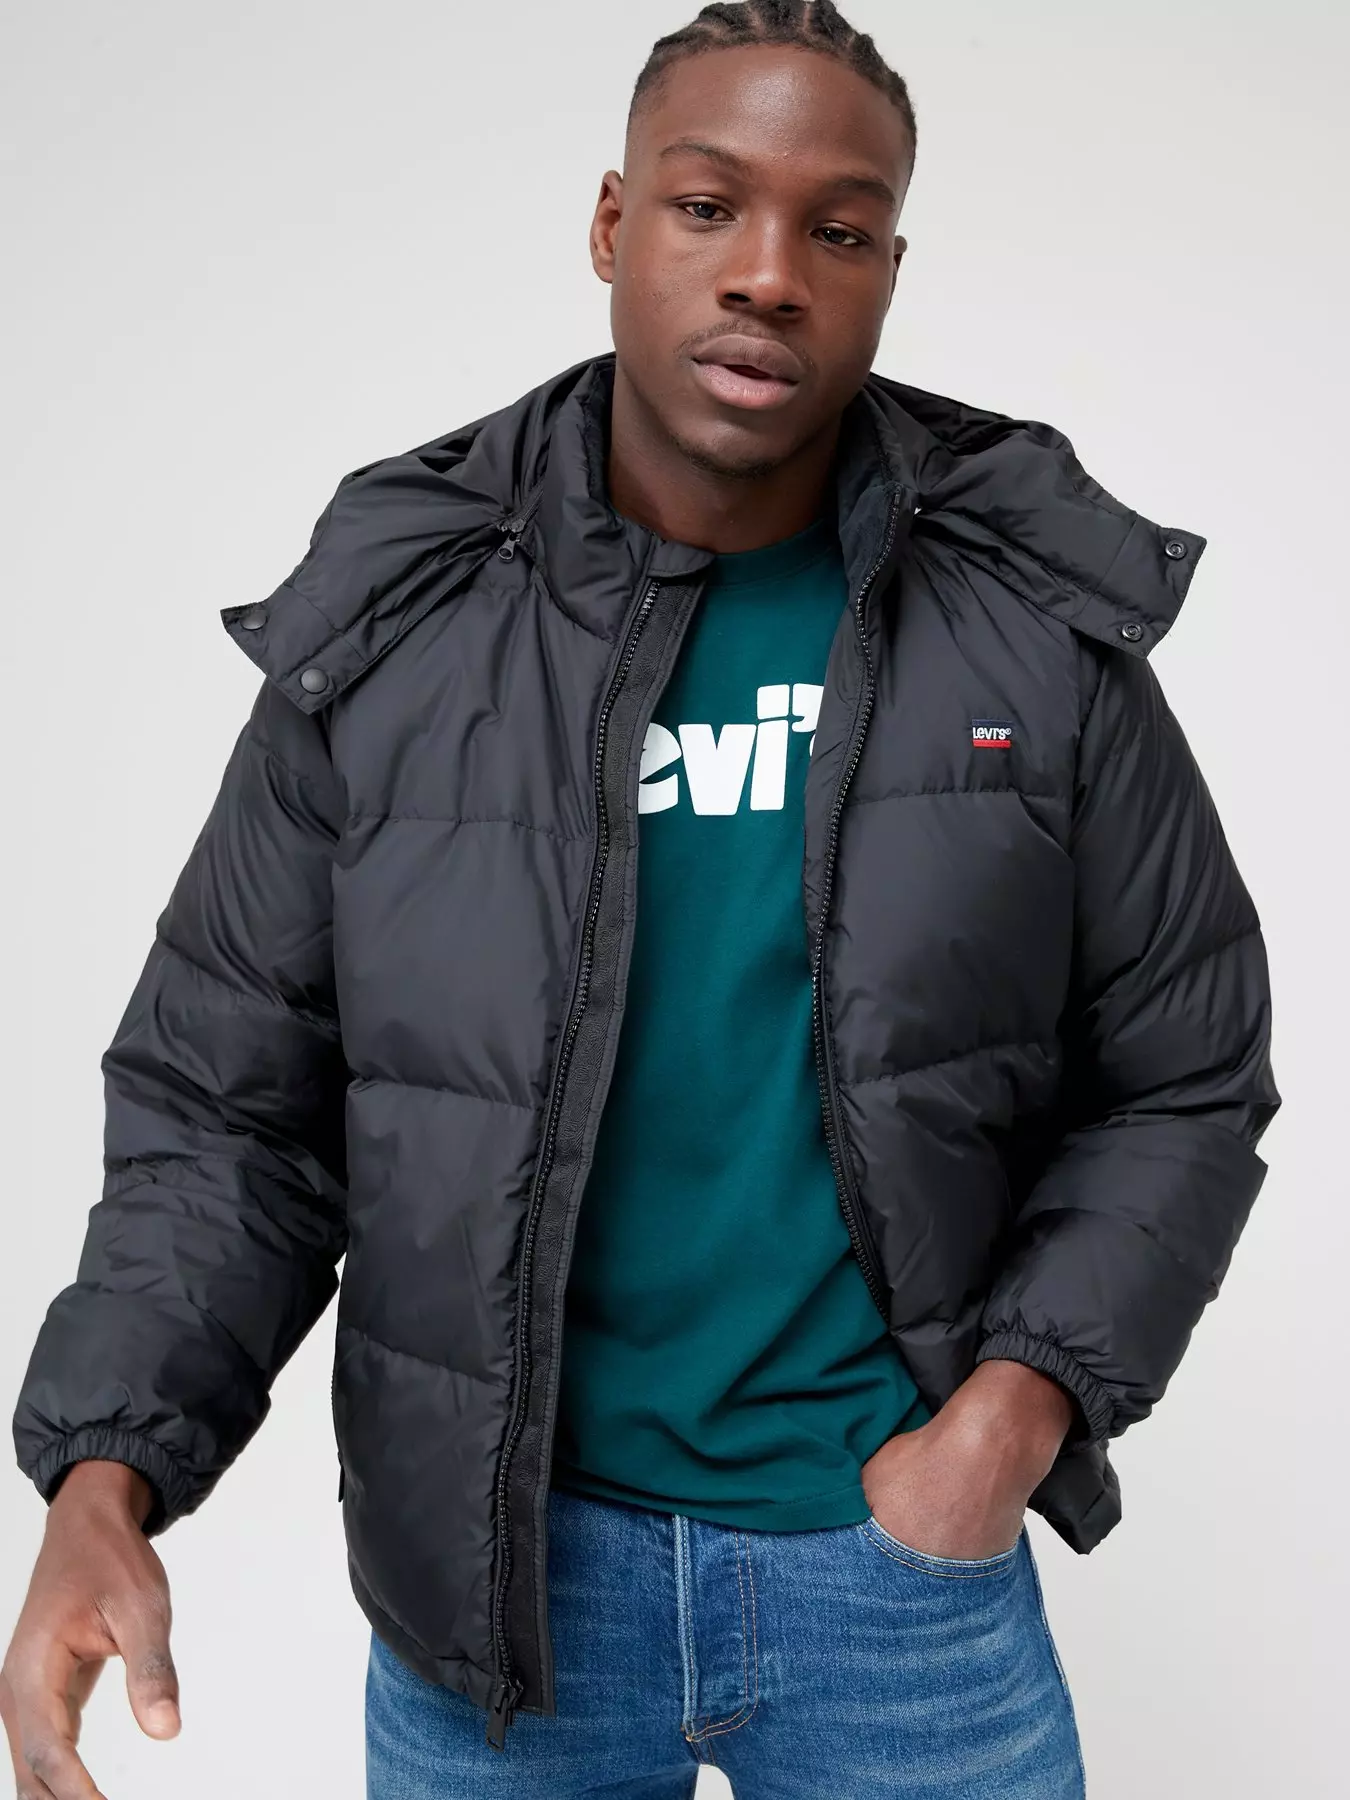 Levi's | Coats & jackets | Men | Very Ireland